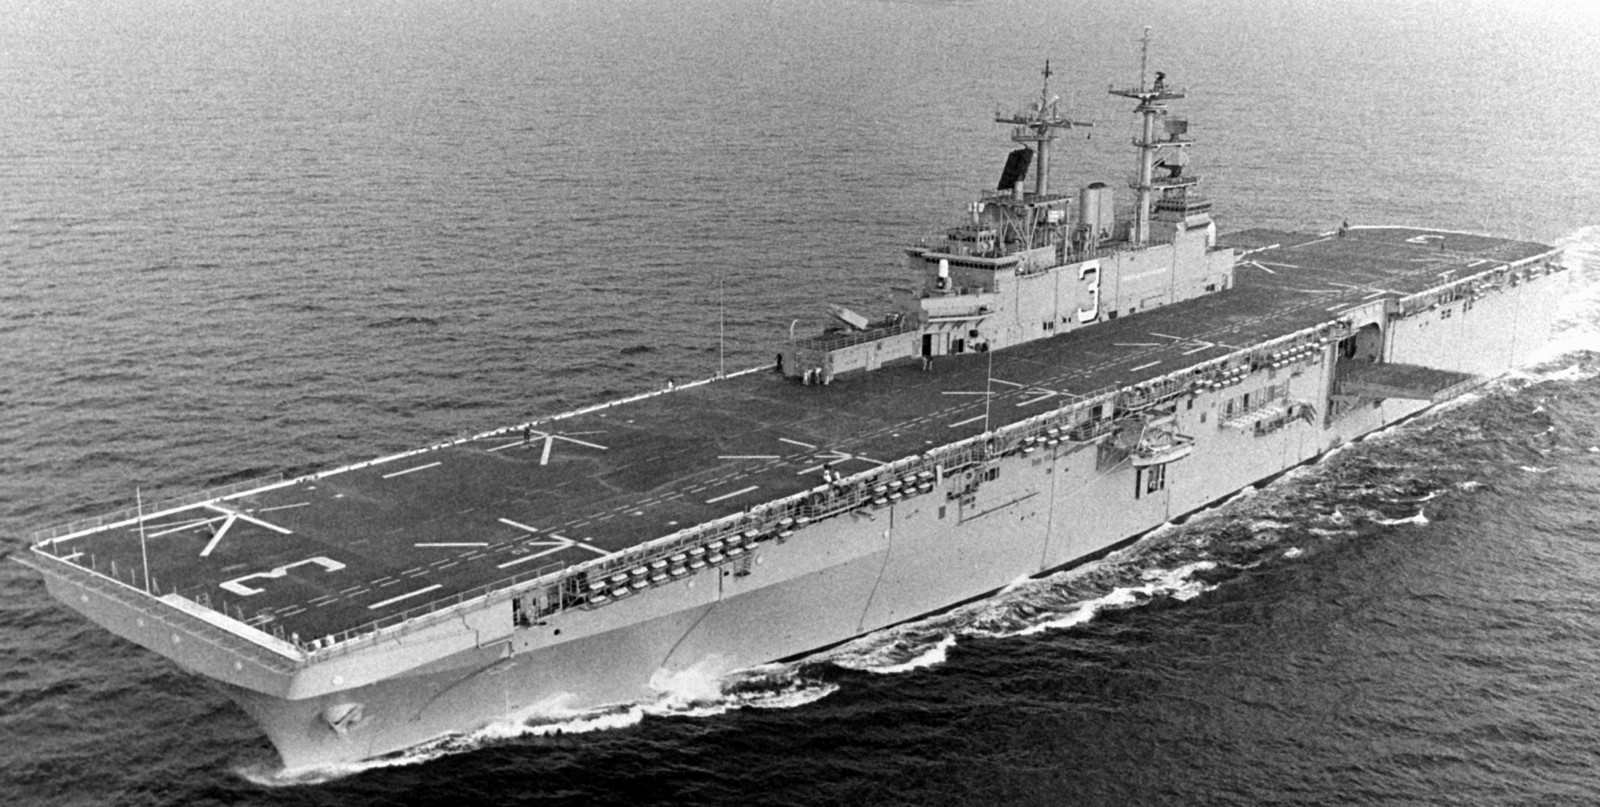 lhd-3 uss kearsarge wasp class amphibious assault ship landing dock us navy 17 trials